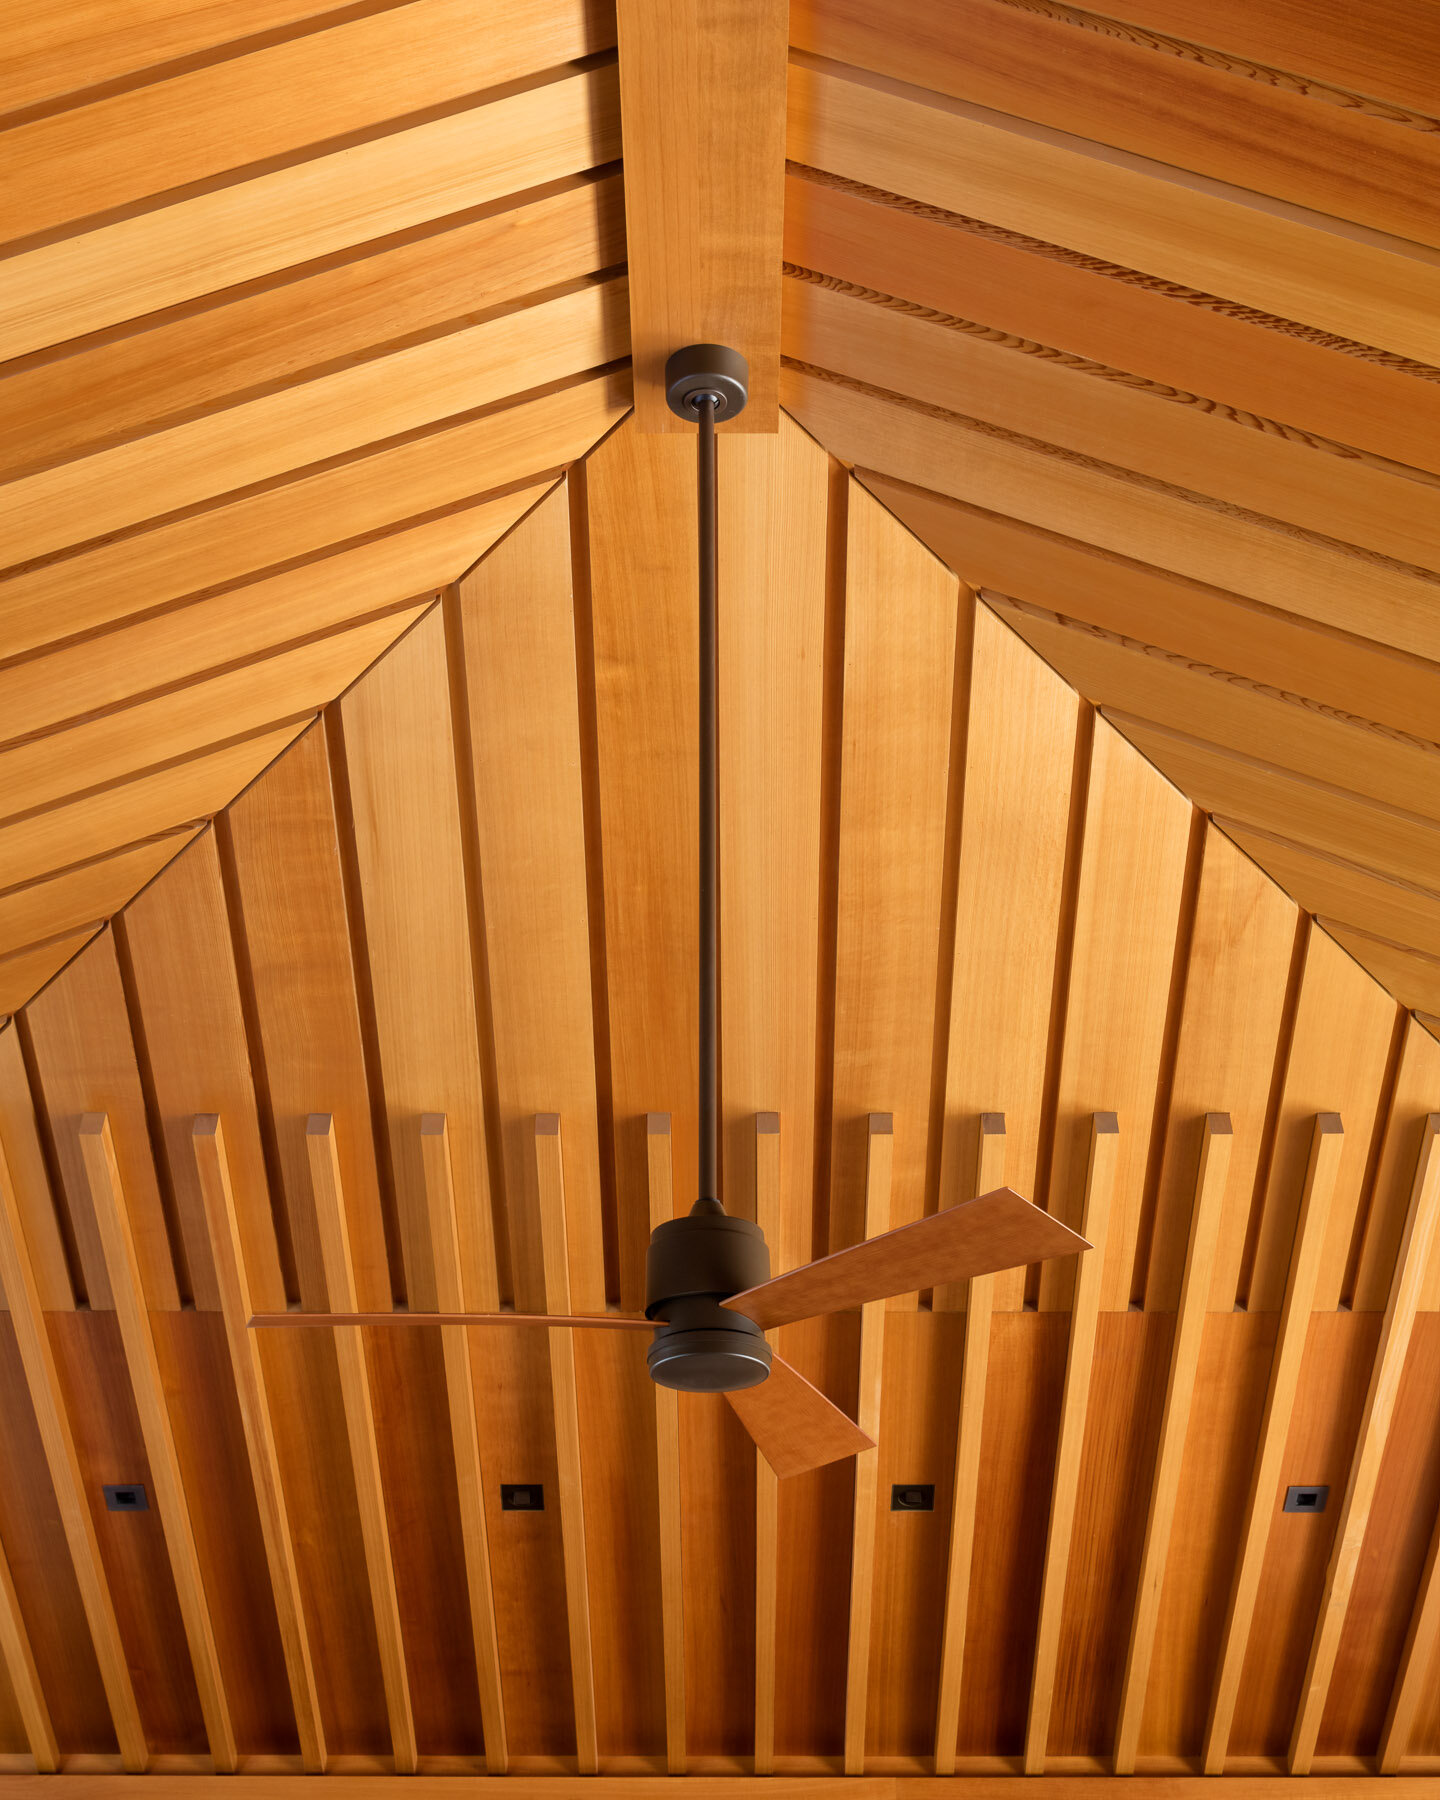  Western Red Cedar ceiling detail 